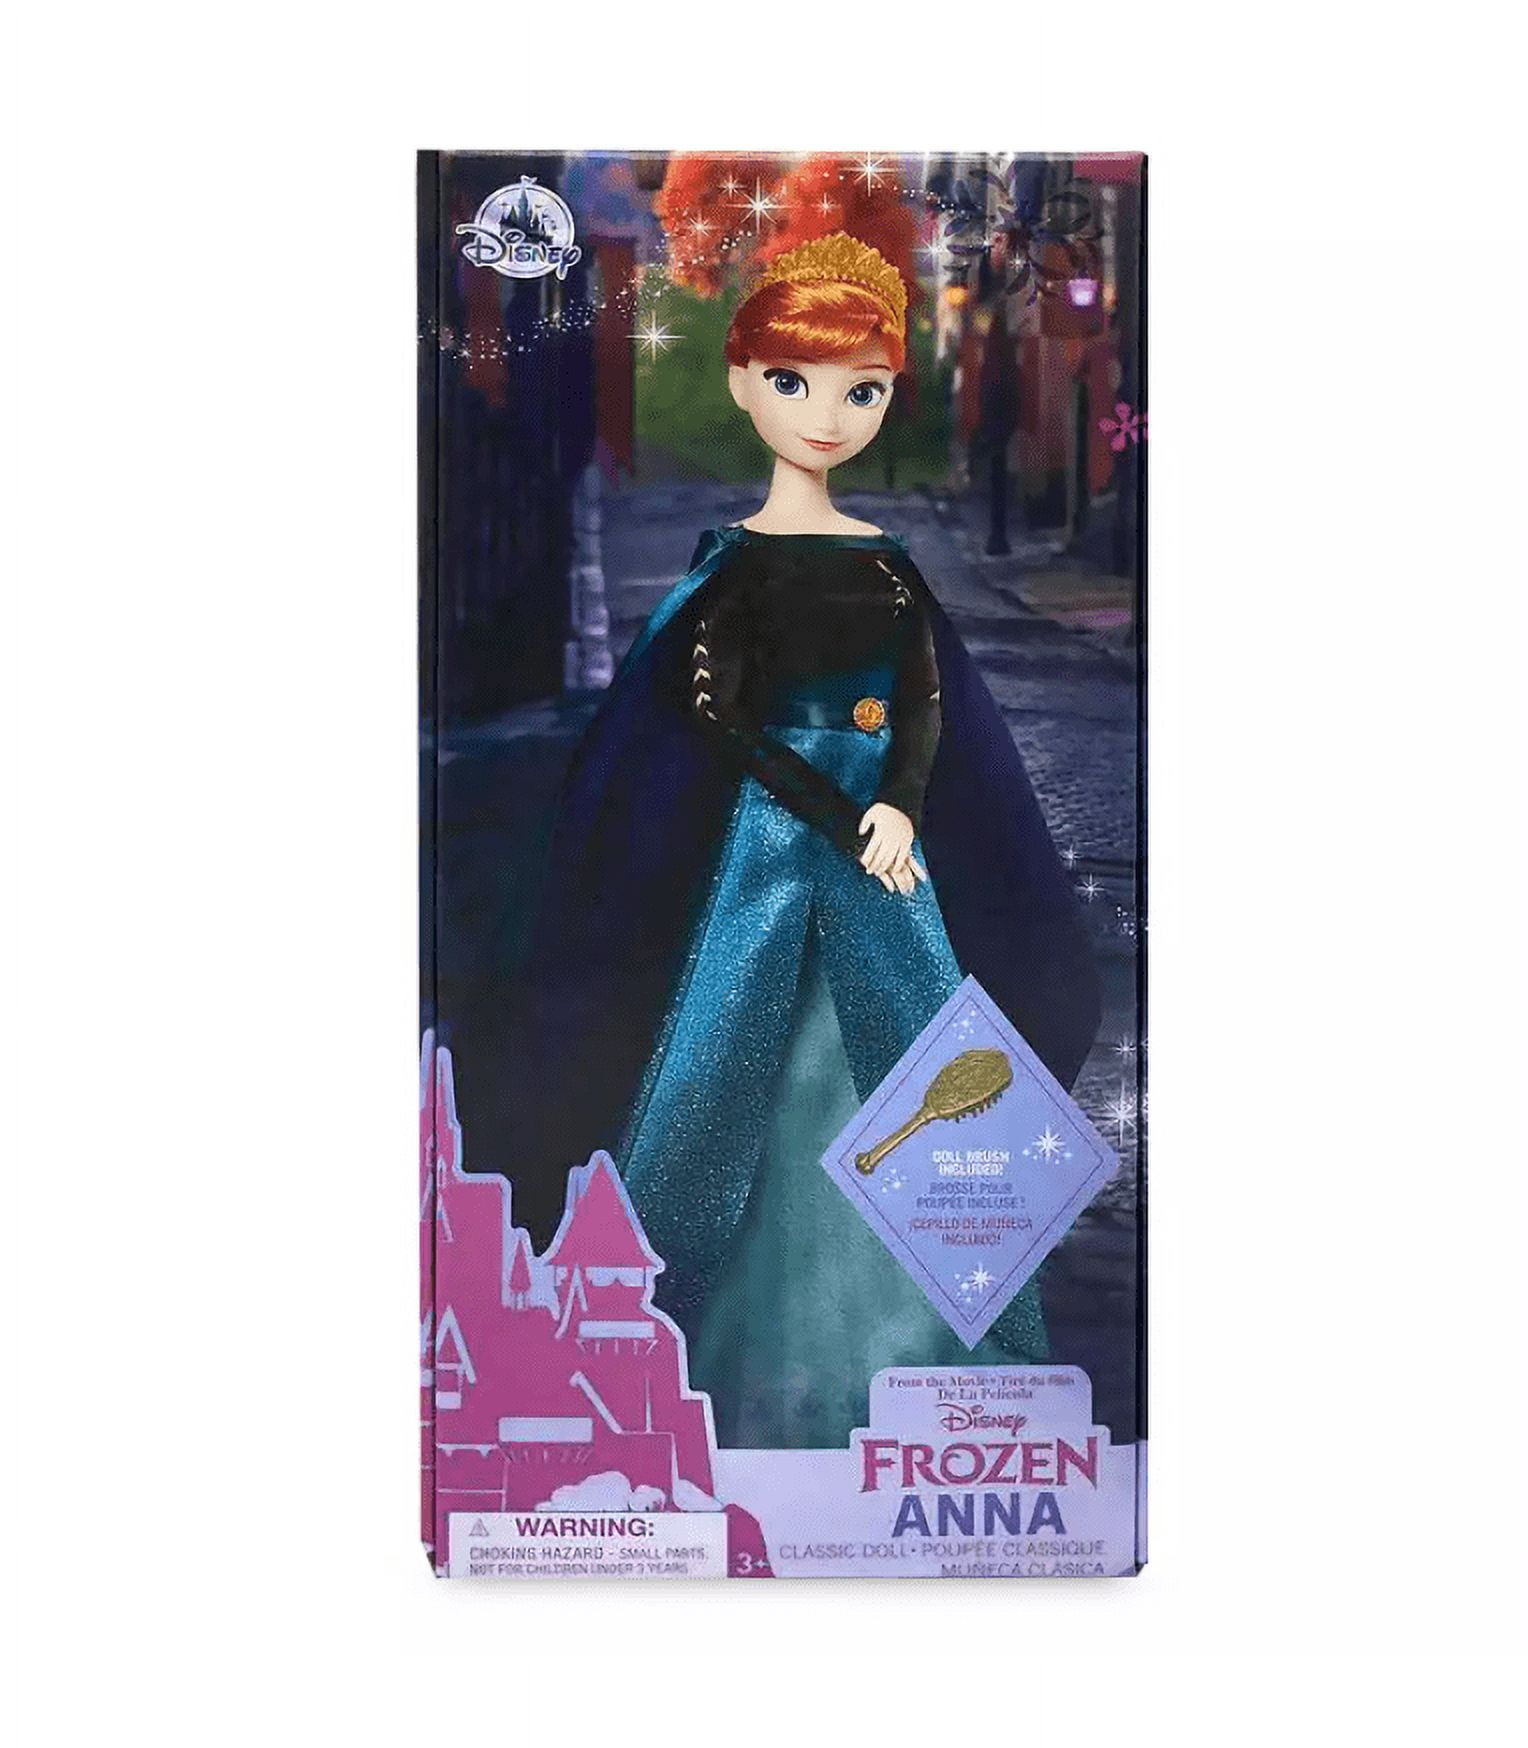 Disney Frozen - Poupée Anna et Elsa